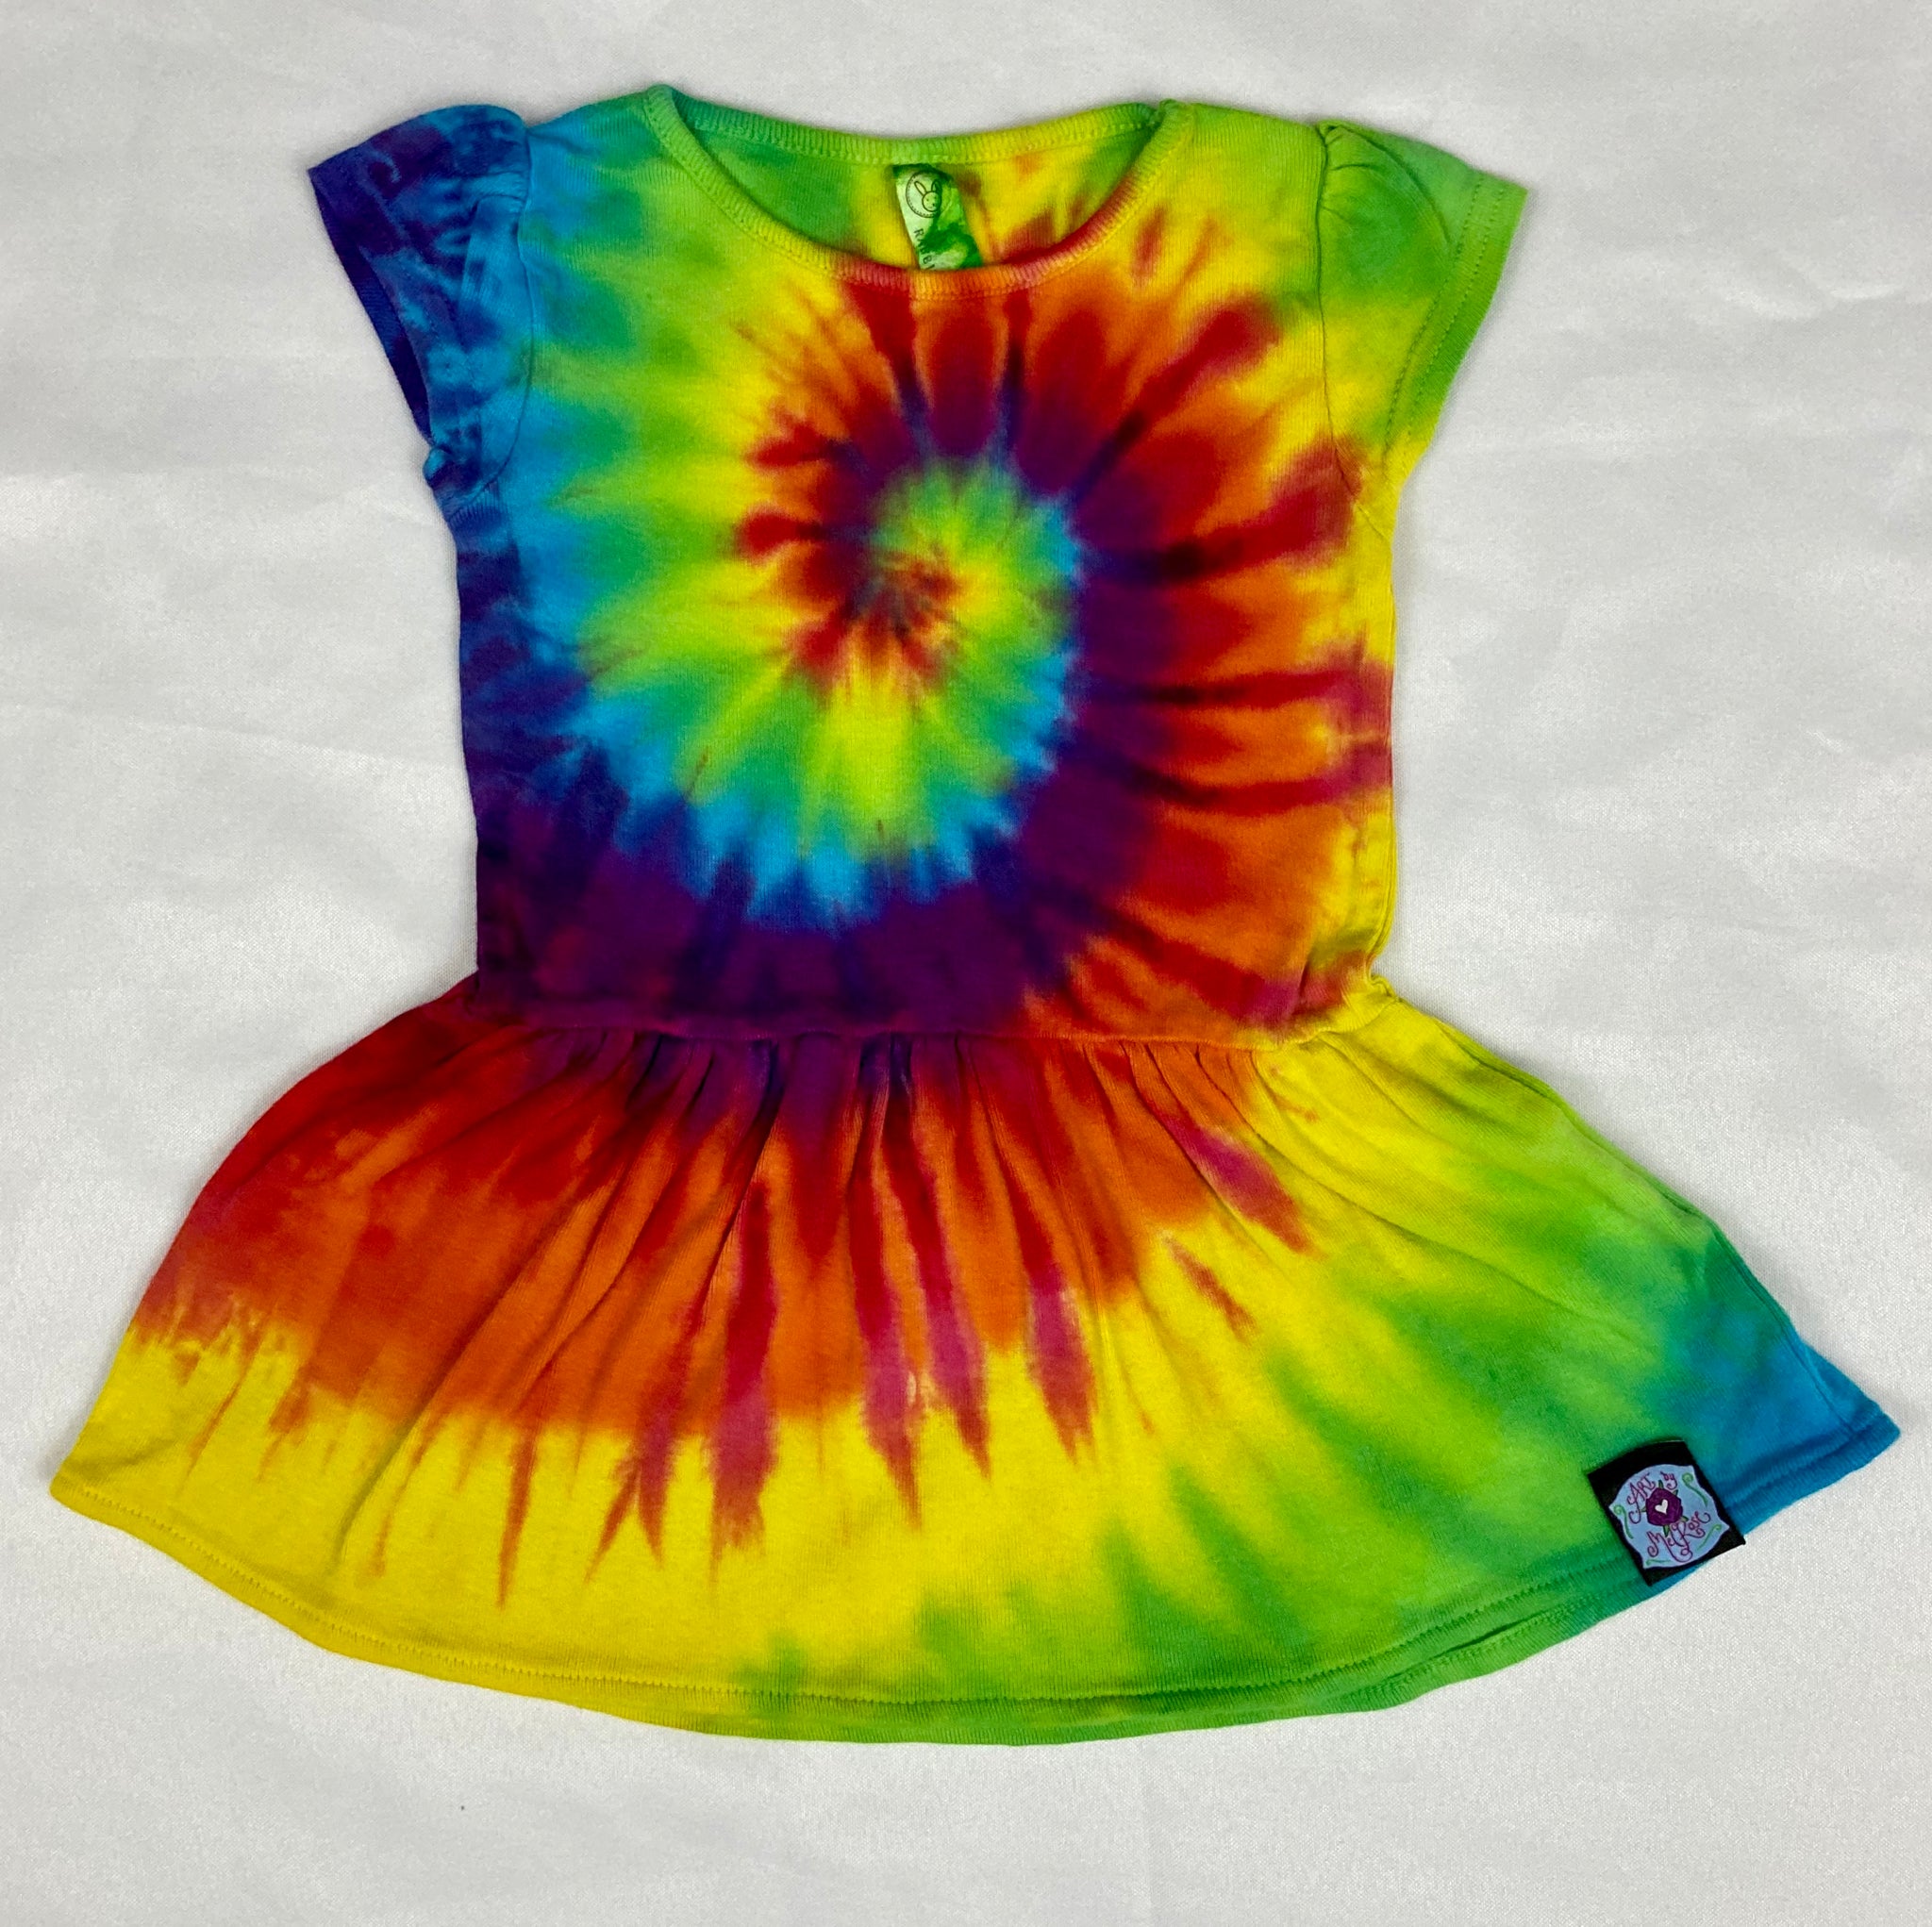 Baby Rainbow Spiral Tie-Dyed Dress, 6M